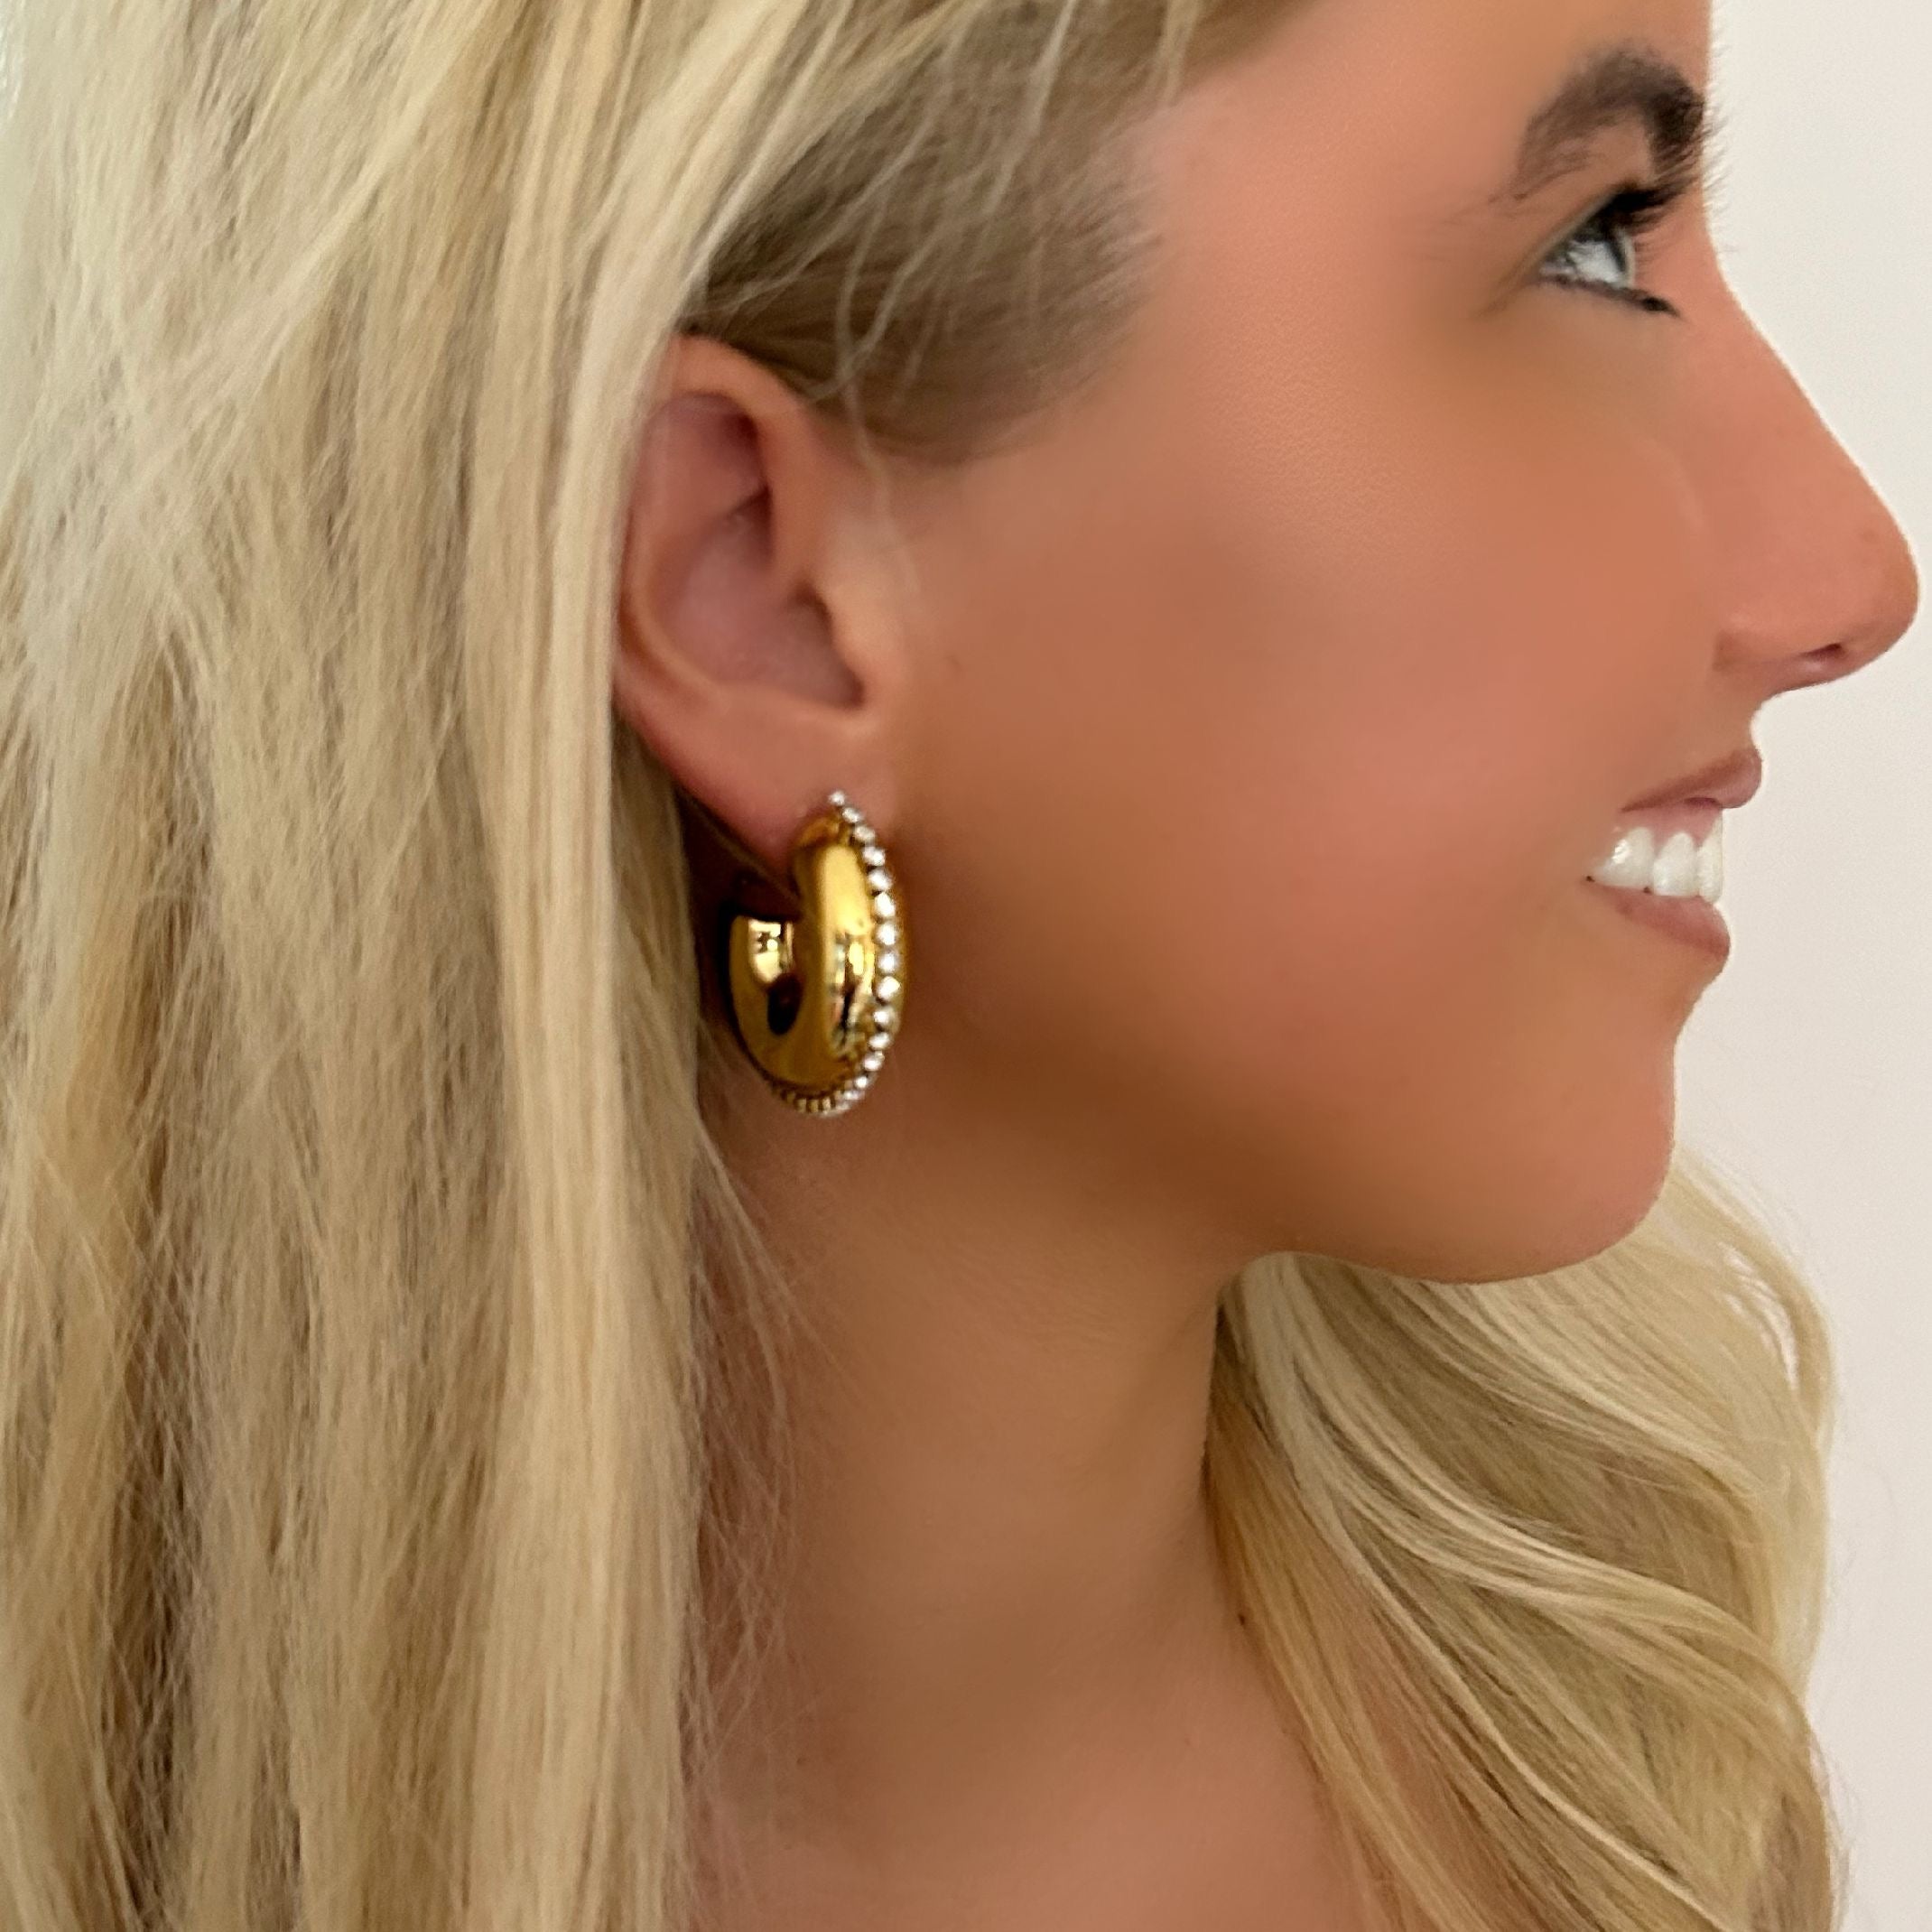 Gold diamanté hoop earrings 